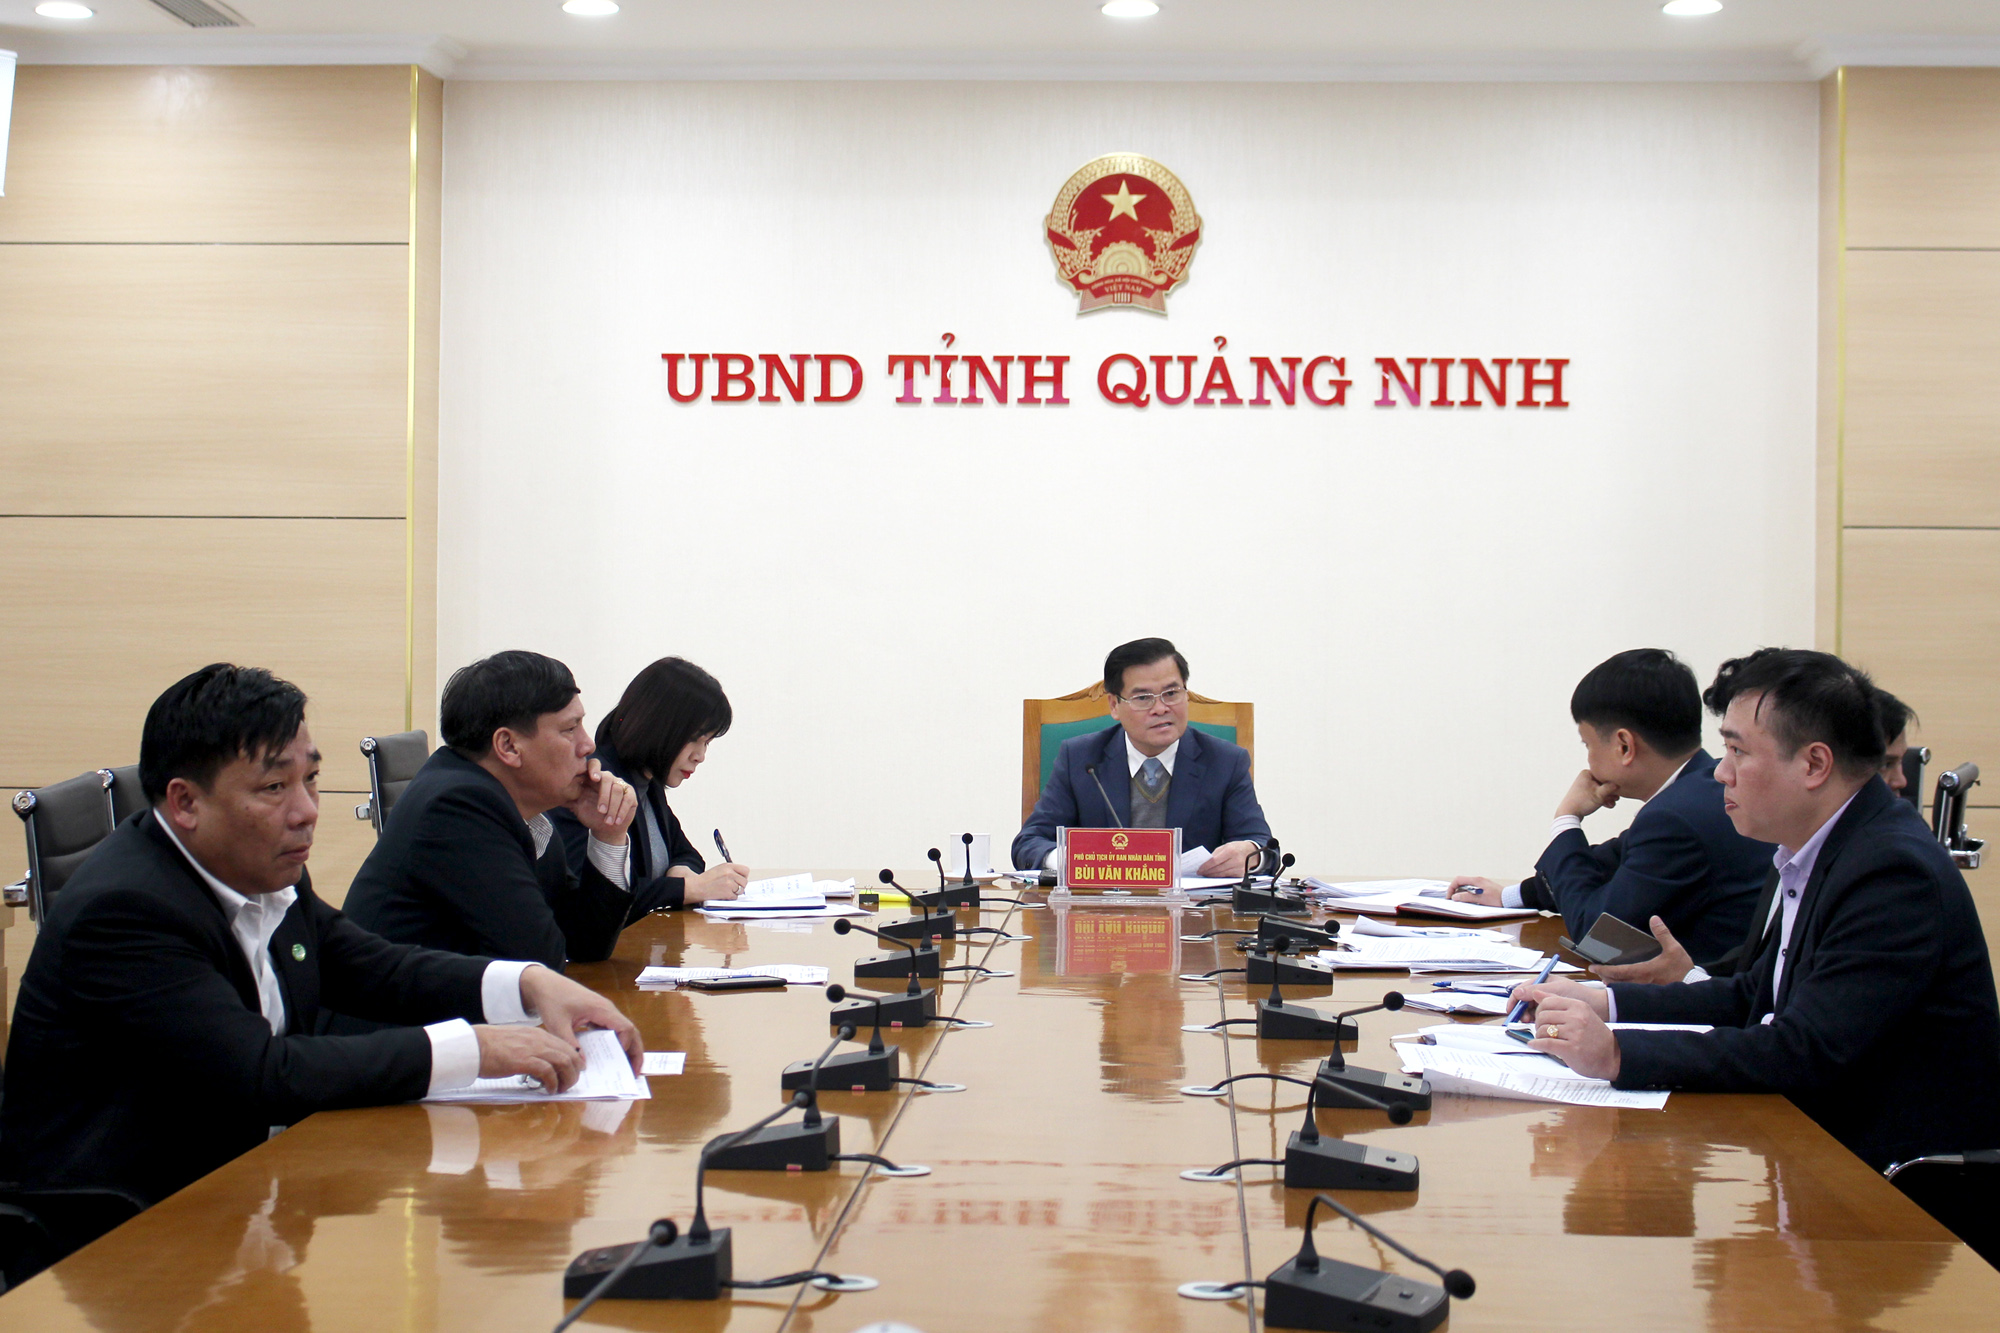 Đồng chí Bùi Văn Khắng, Phó Chủ tịch UBND tỉnh, chủ trì cuộc họp.